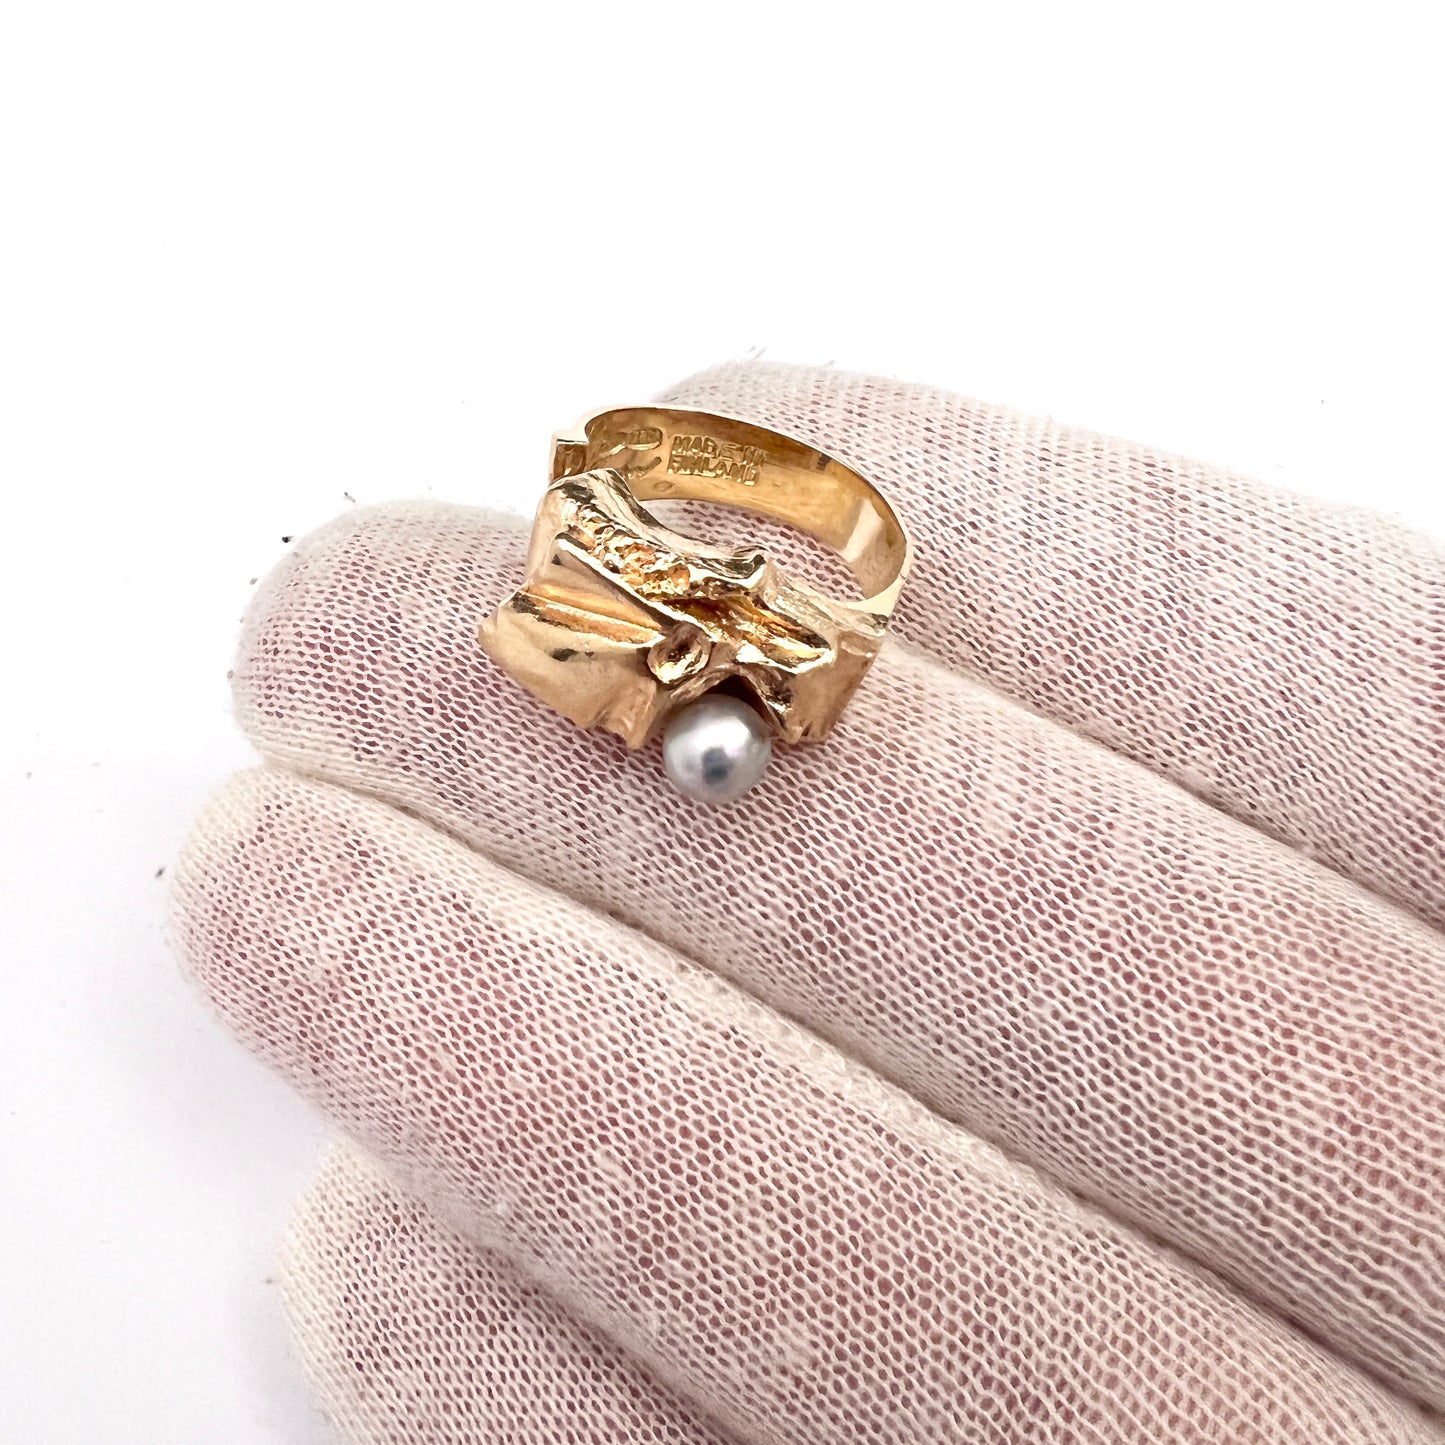 Björn Weckström Lapponia, Finland. Vintage 18k Gold Pearl Ring. Design: Ukkoshelmi